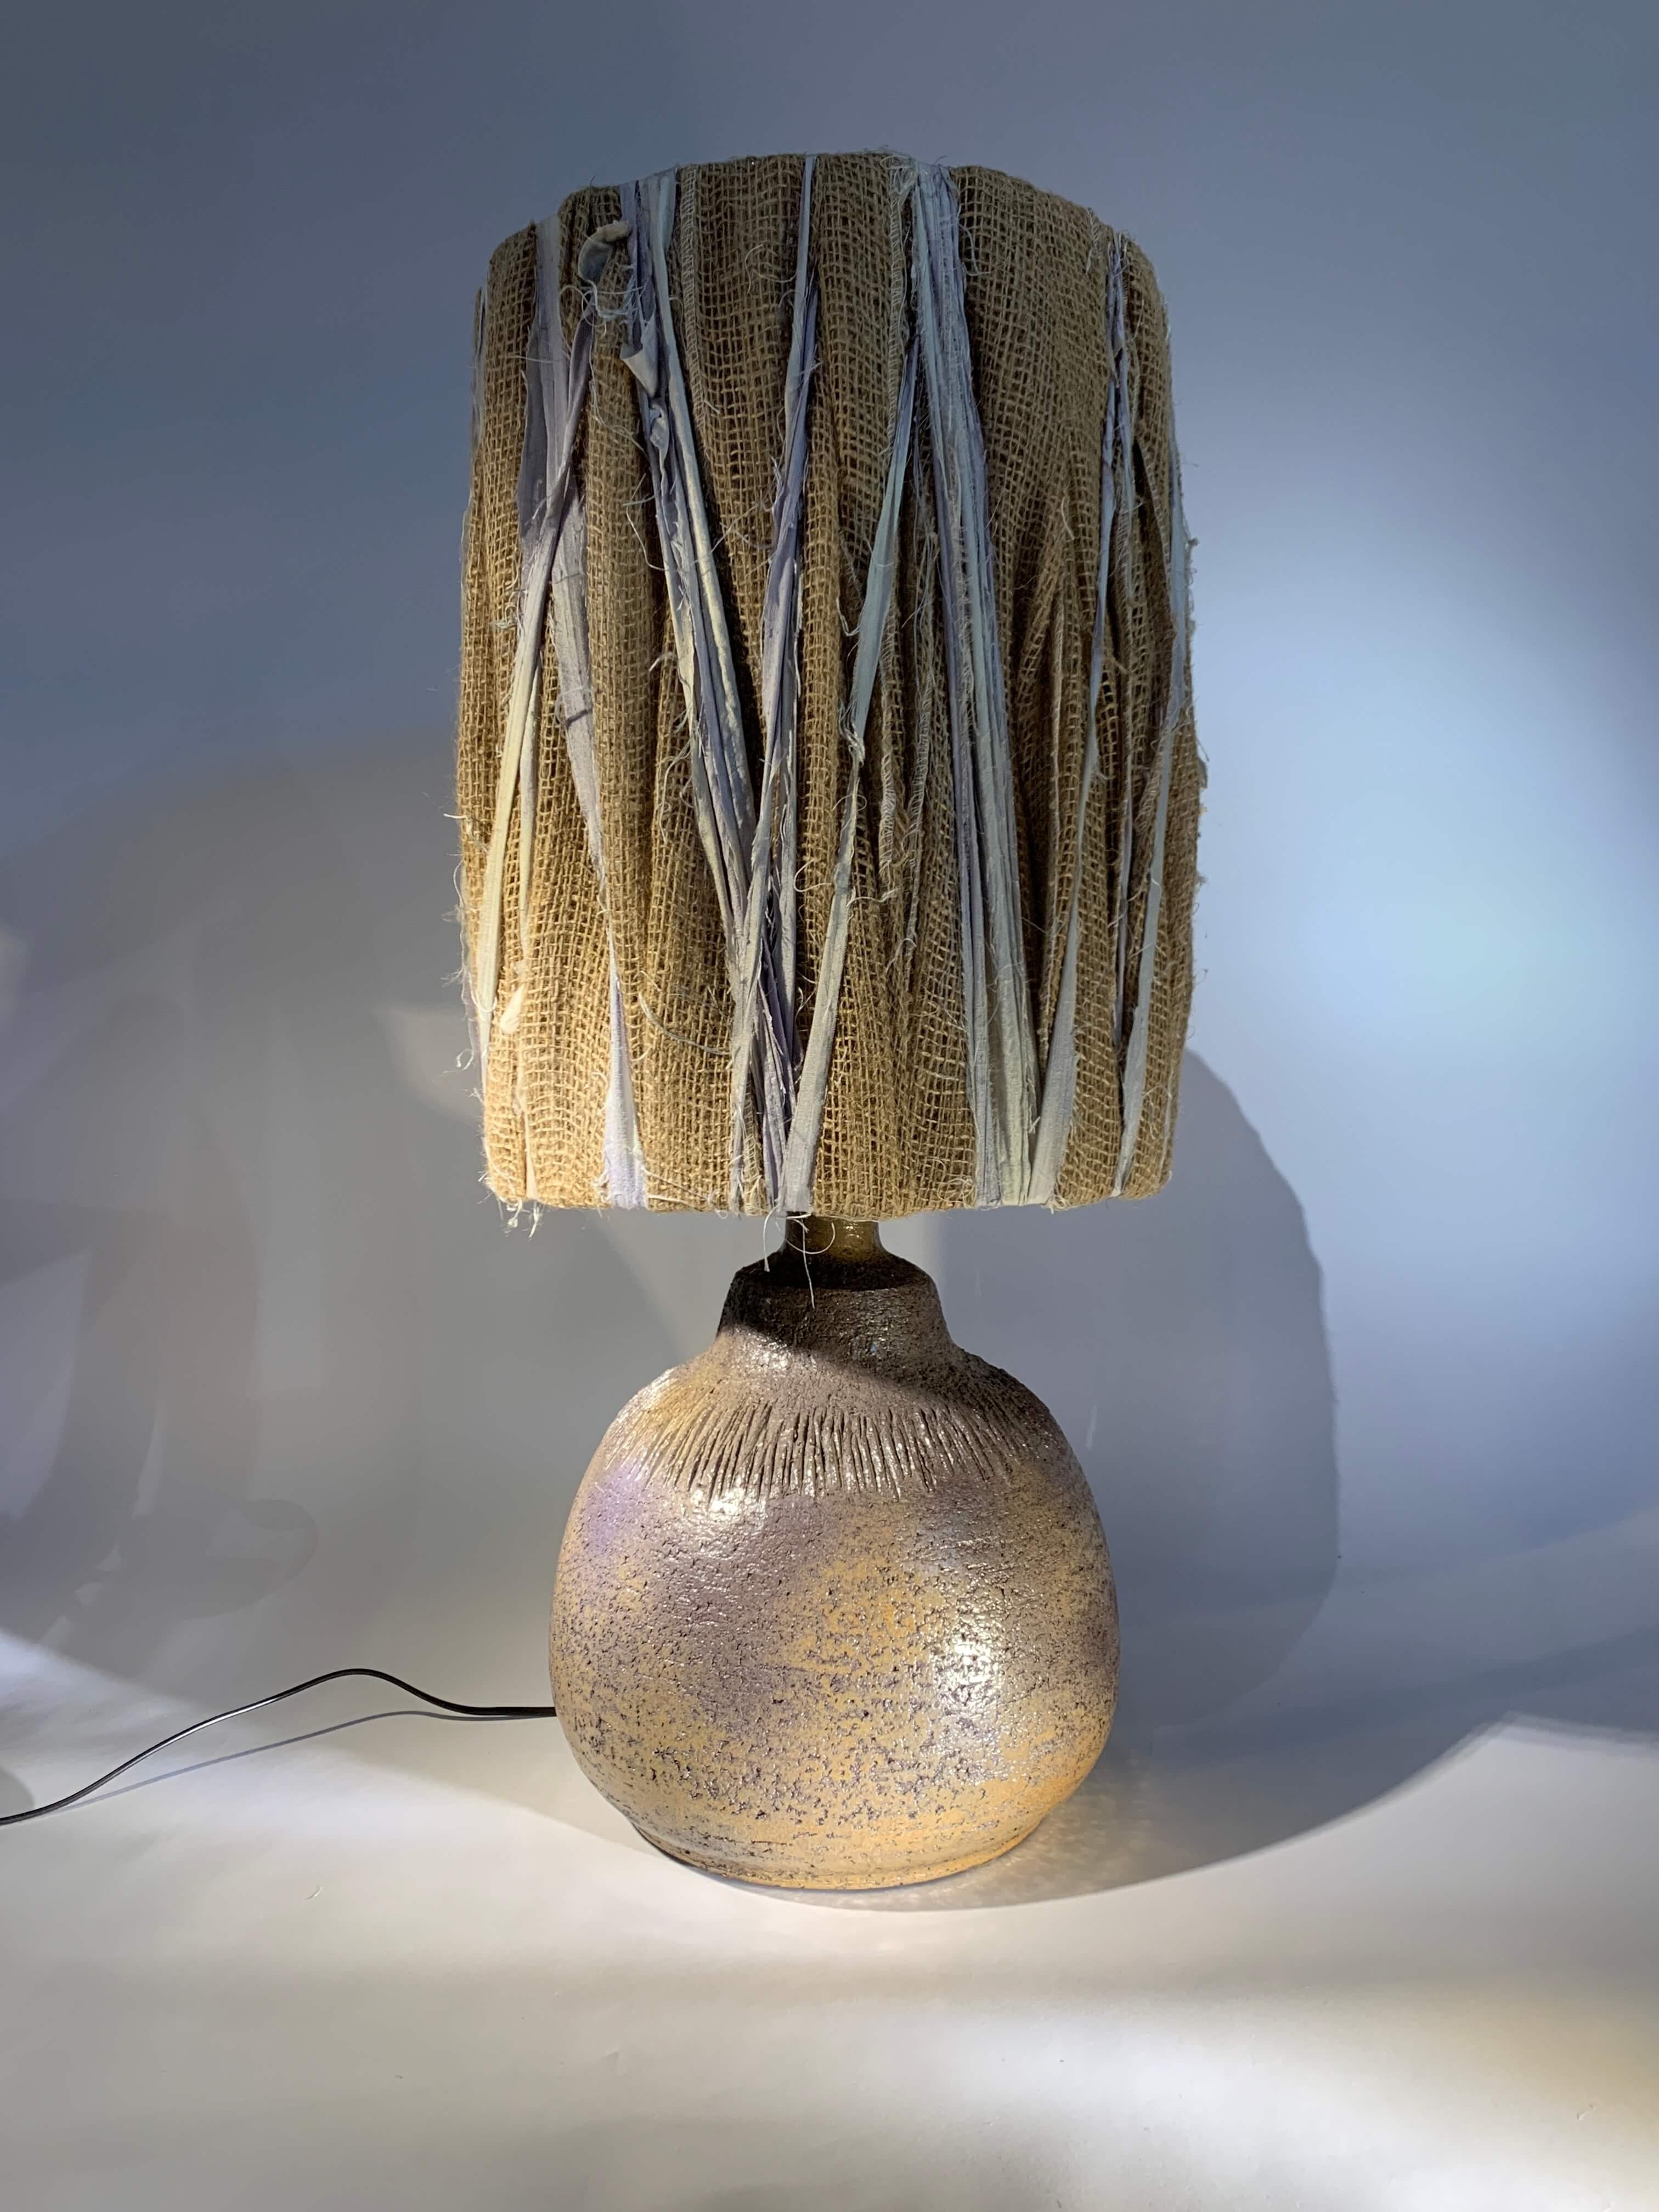 Excepcional lámpara de sobremesa francesa de cerámica de Huguette Bessone.
Base de lámpara en tierra chamota, cuerpo circular y generoso con decoración incisa.
Esta cerámica, cuya forma y decoración son inusuales para el artista, también es